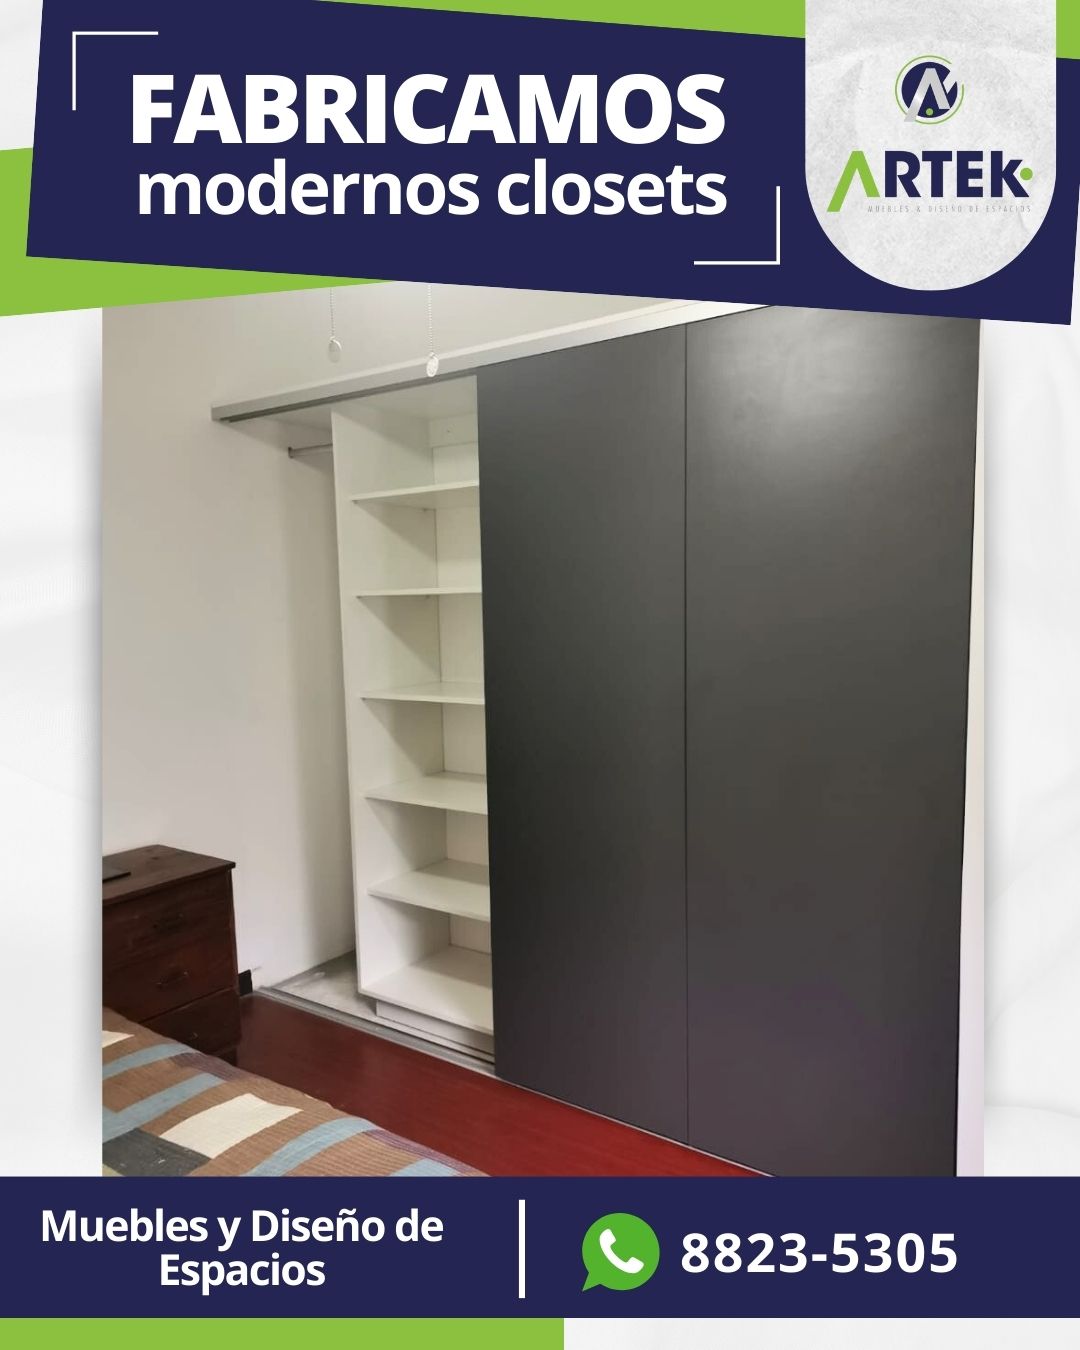 Transforma tu hogar con nuestros modernos closets!